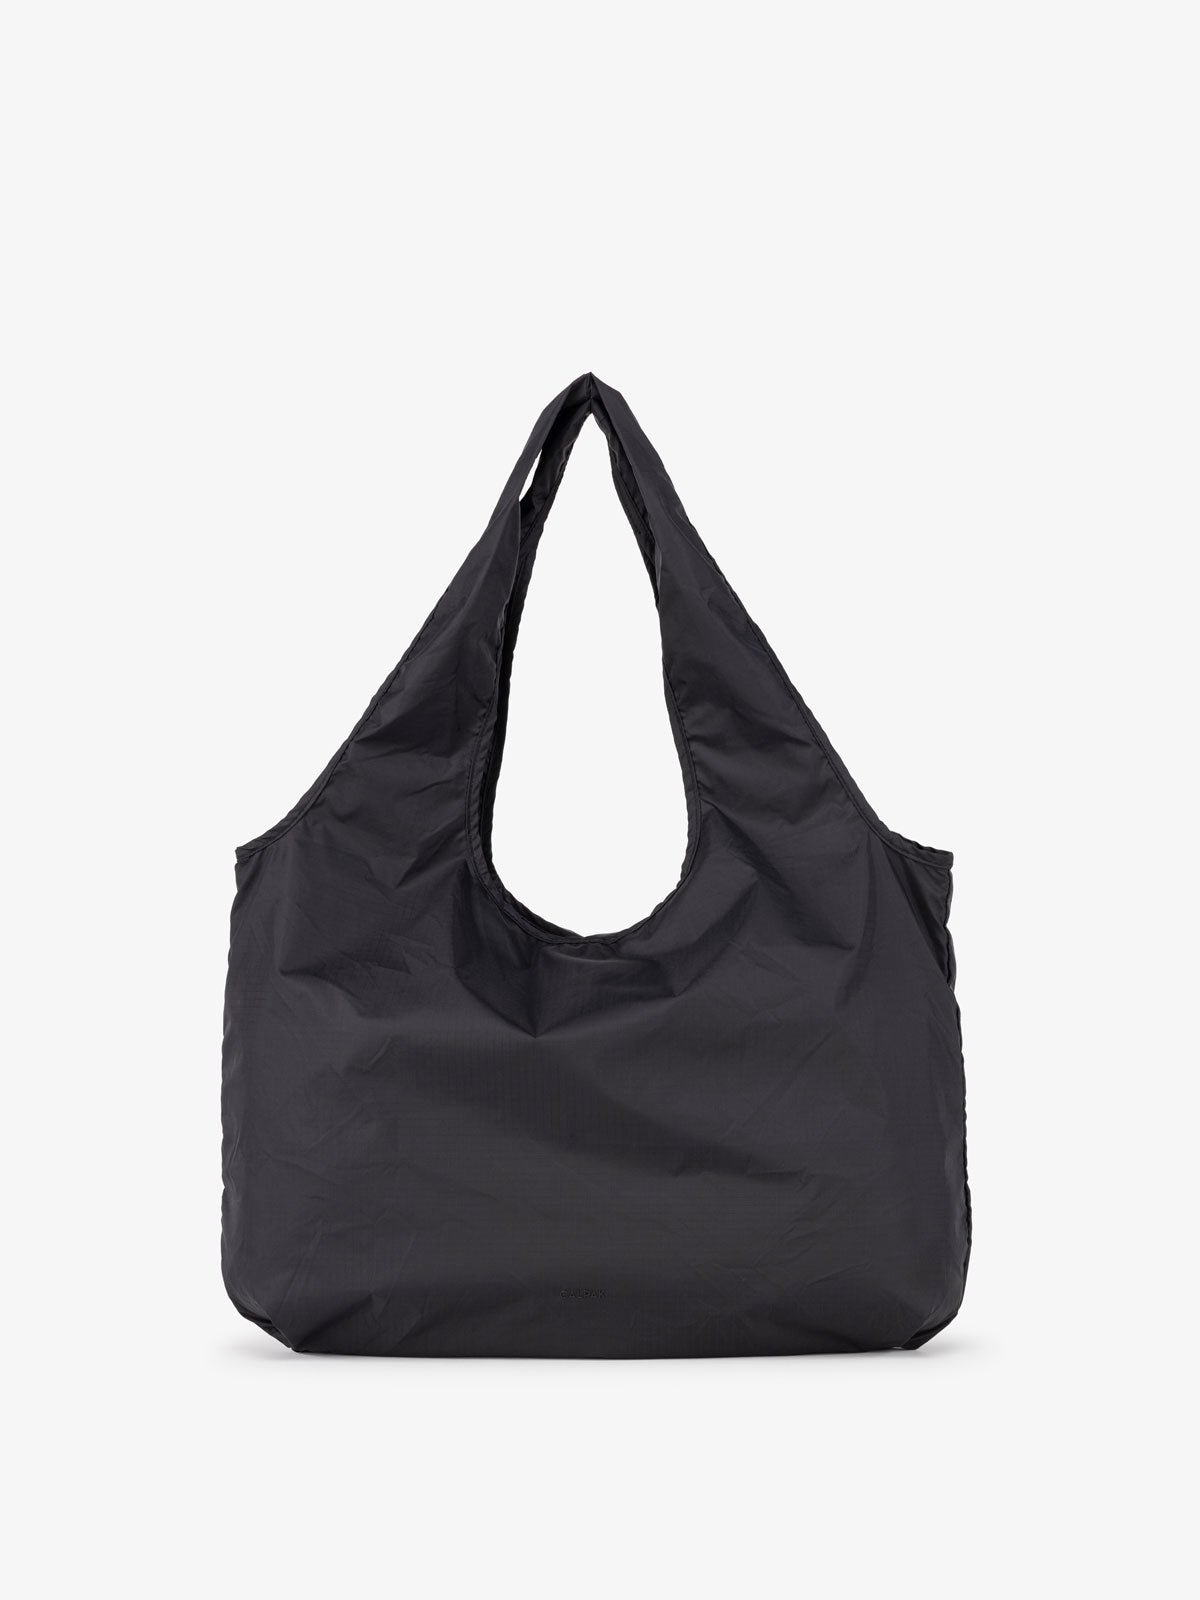 CALPAK Packable Tote Bag in black